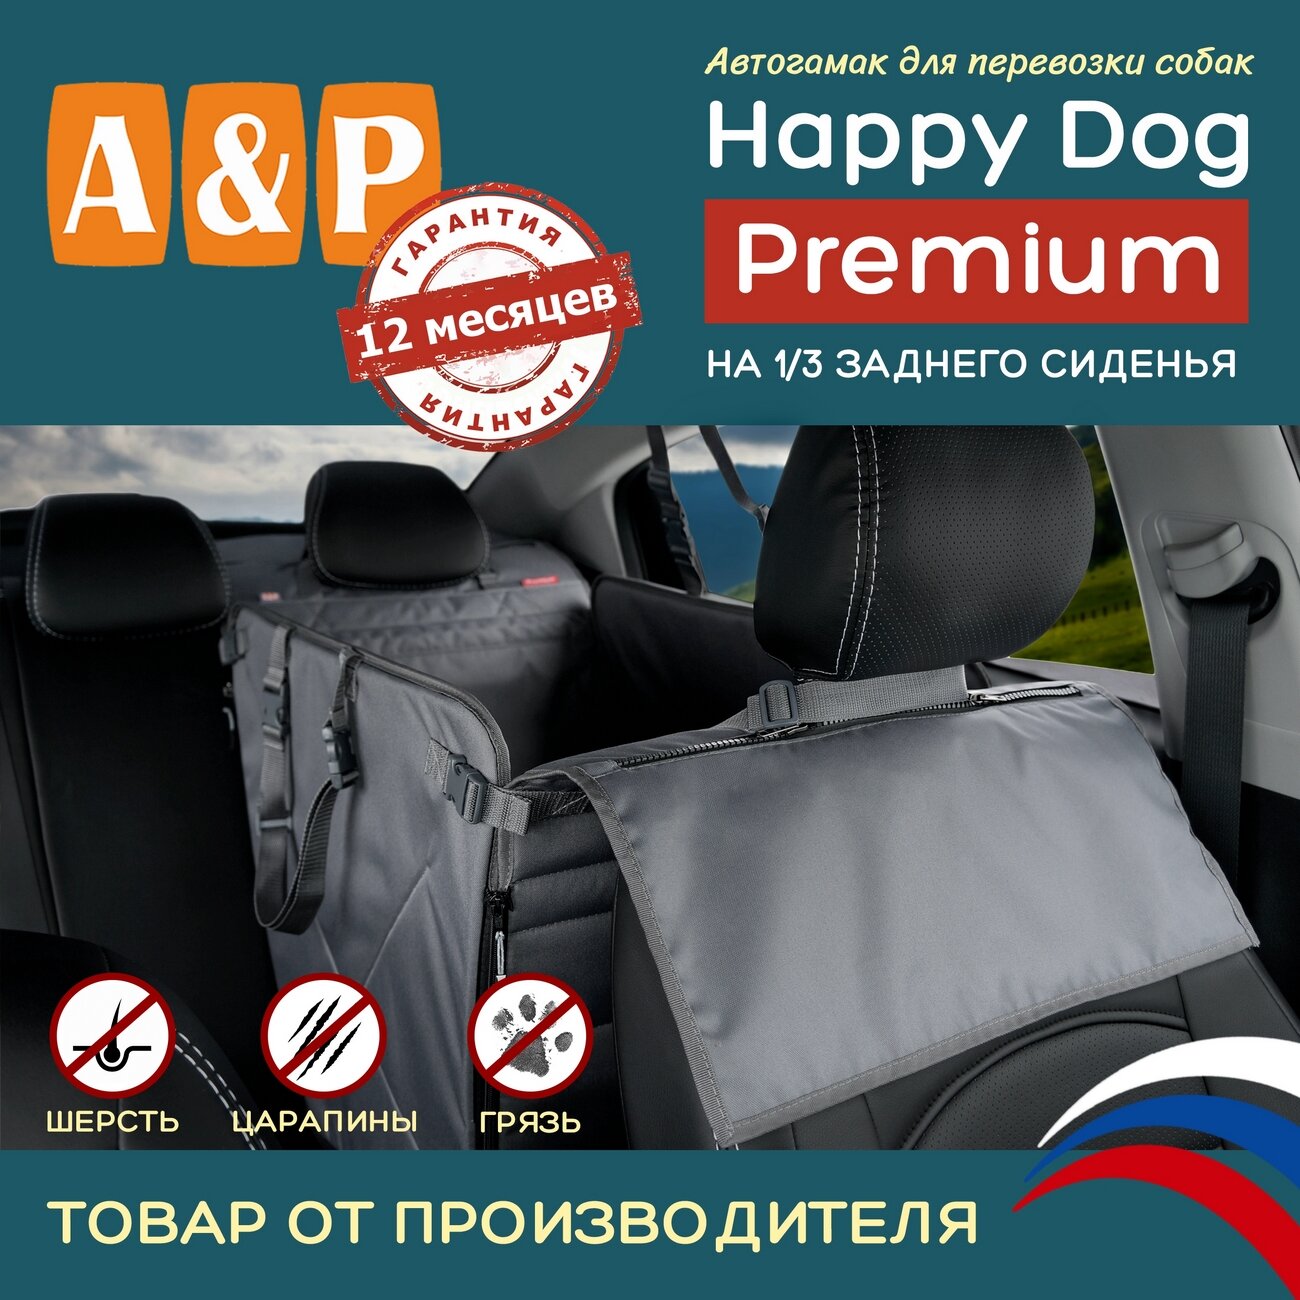 Автогамак Happy Dog Premium (Хэппи Дог Премиум). На 1/3 заднего сиденья. Цвет: серый.